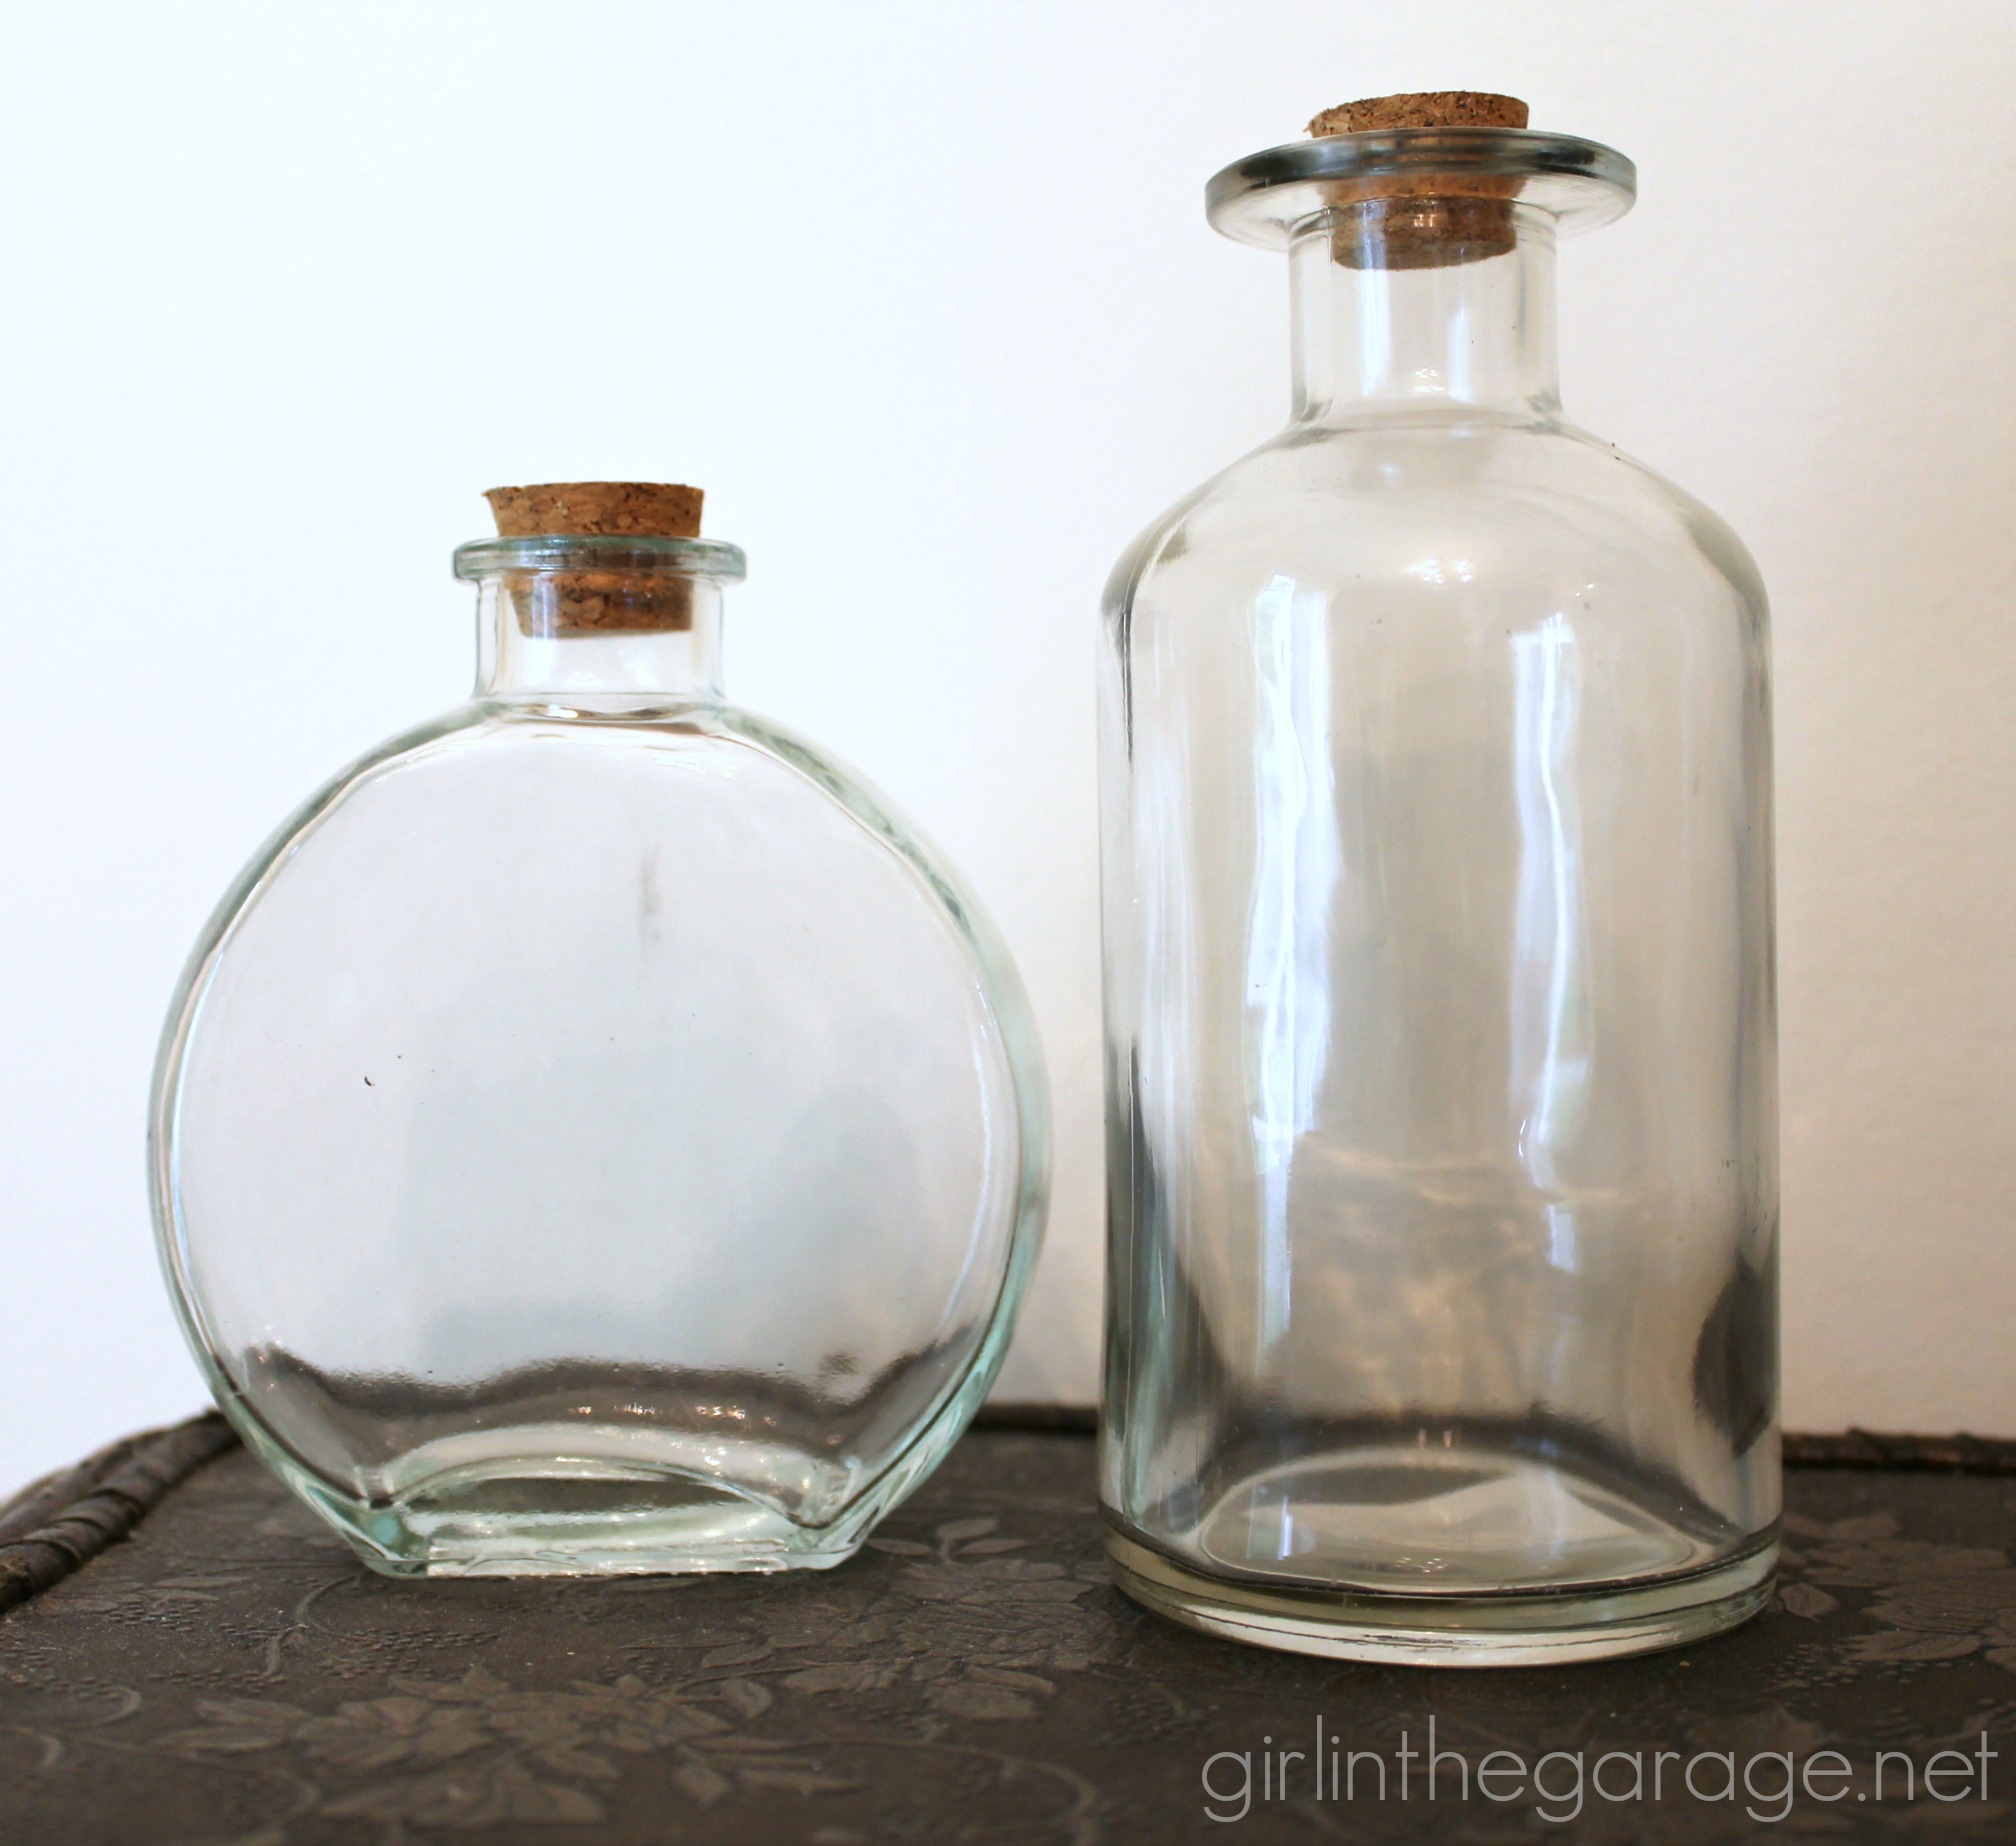 Embellished Glass Bottles